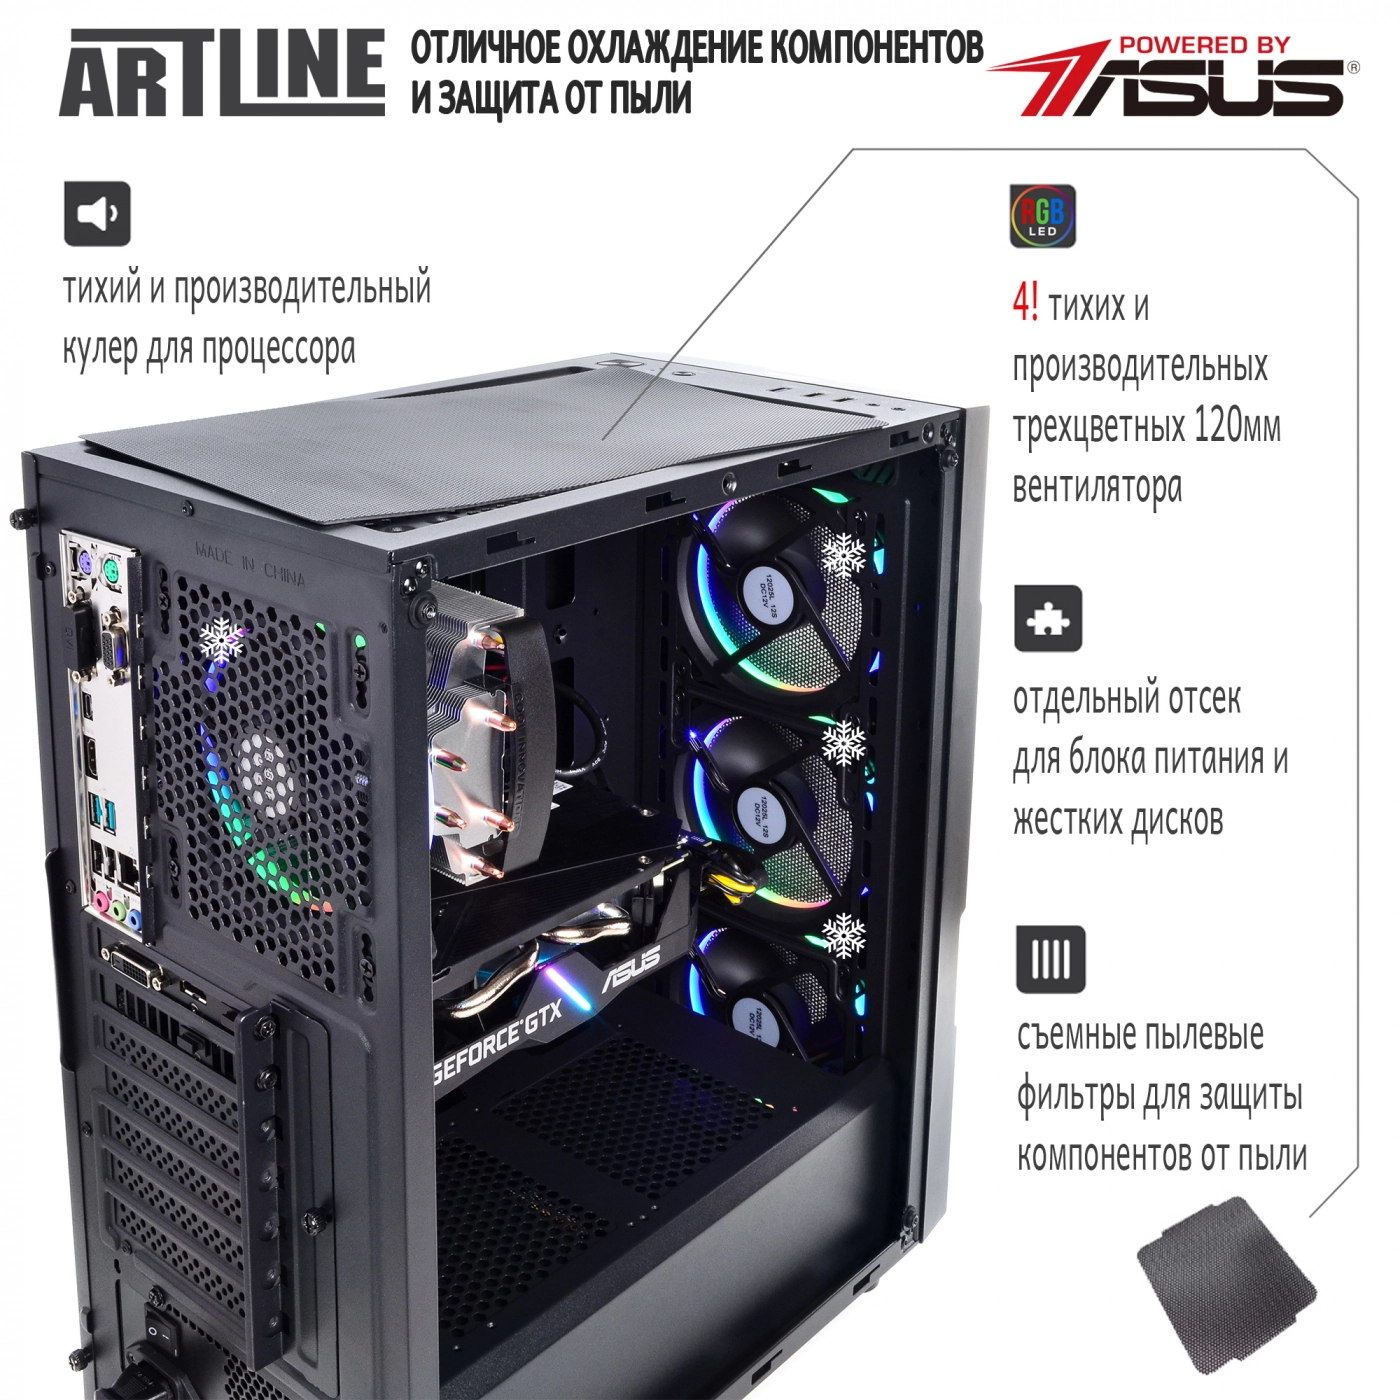 Купить Компьютер ARTLINE Gaming X74v11 - фото 2